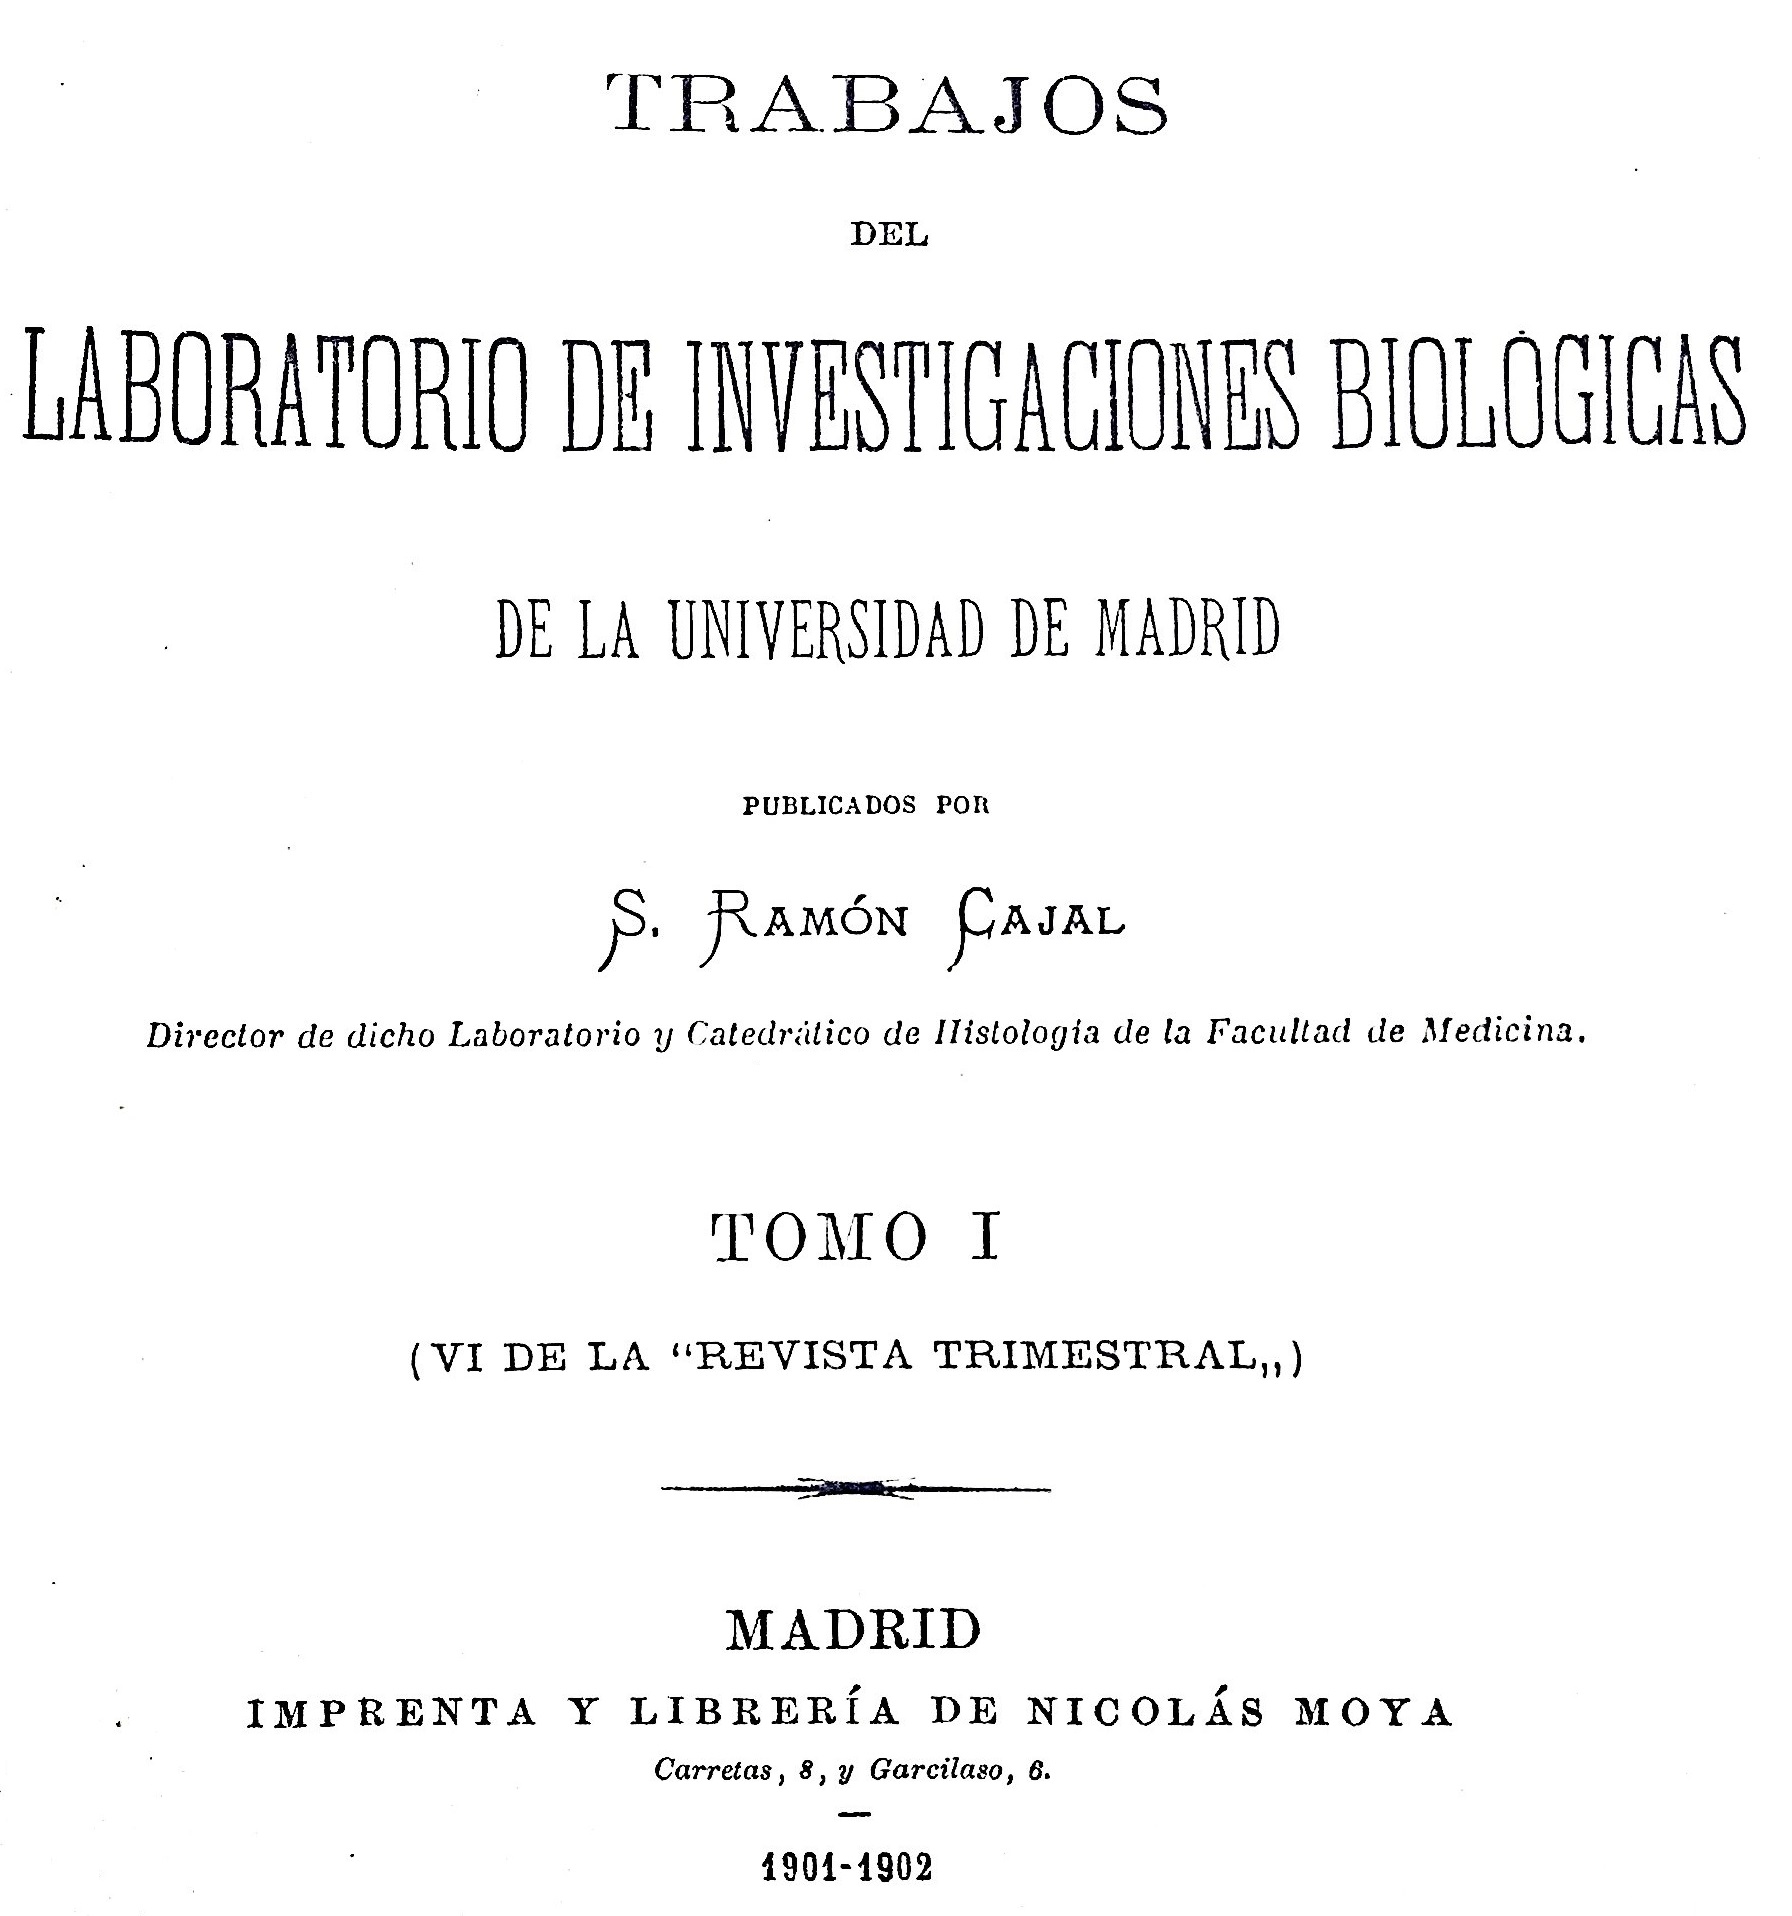 Portada del primer número de Trabajos del Laboratorio de Investigaciones Biológicas (1901-1902). Editado por la Librería Nicolás Moya.